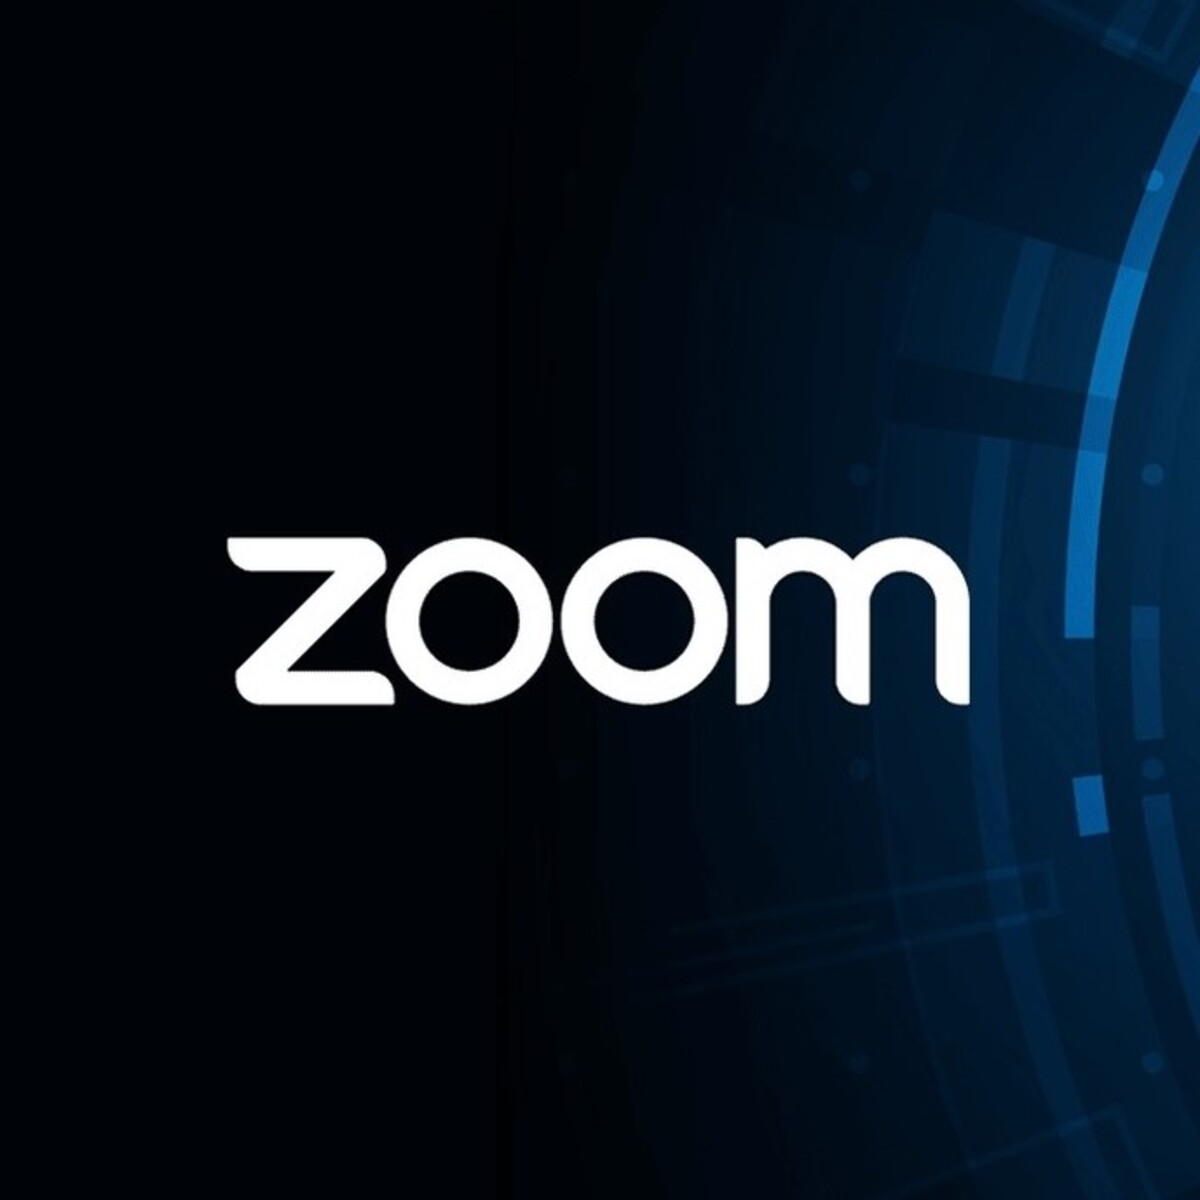 Zoom, Peacock, TikTok : le trio des marques à la plus forte croissance en 2020